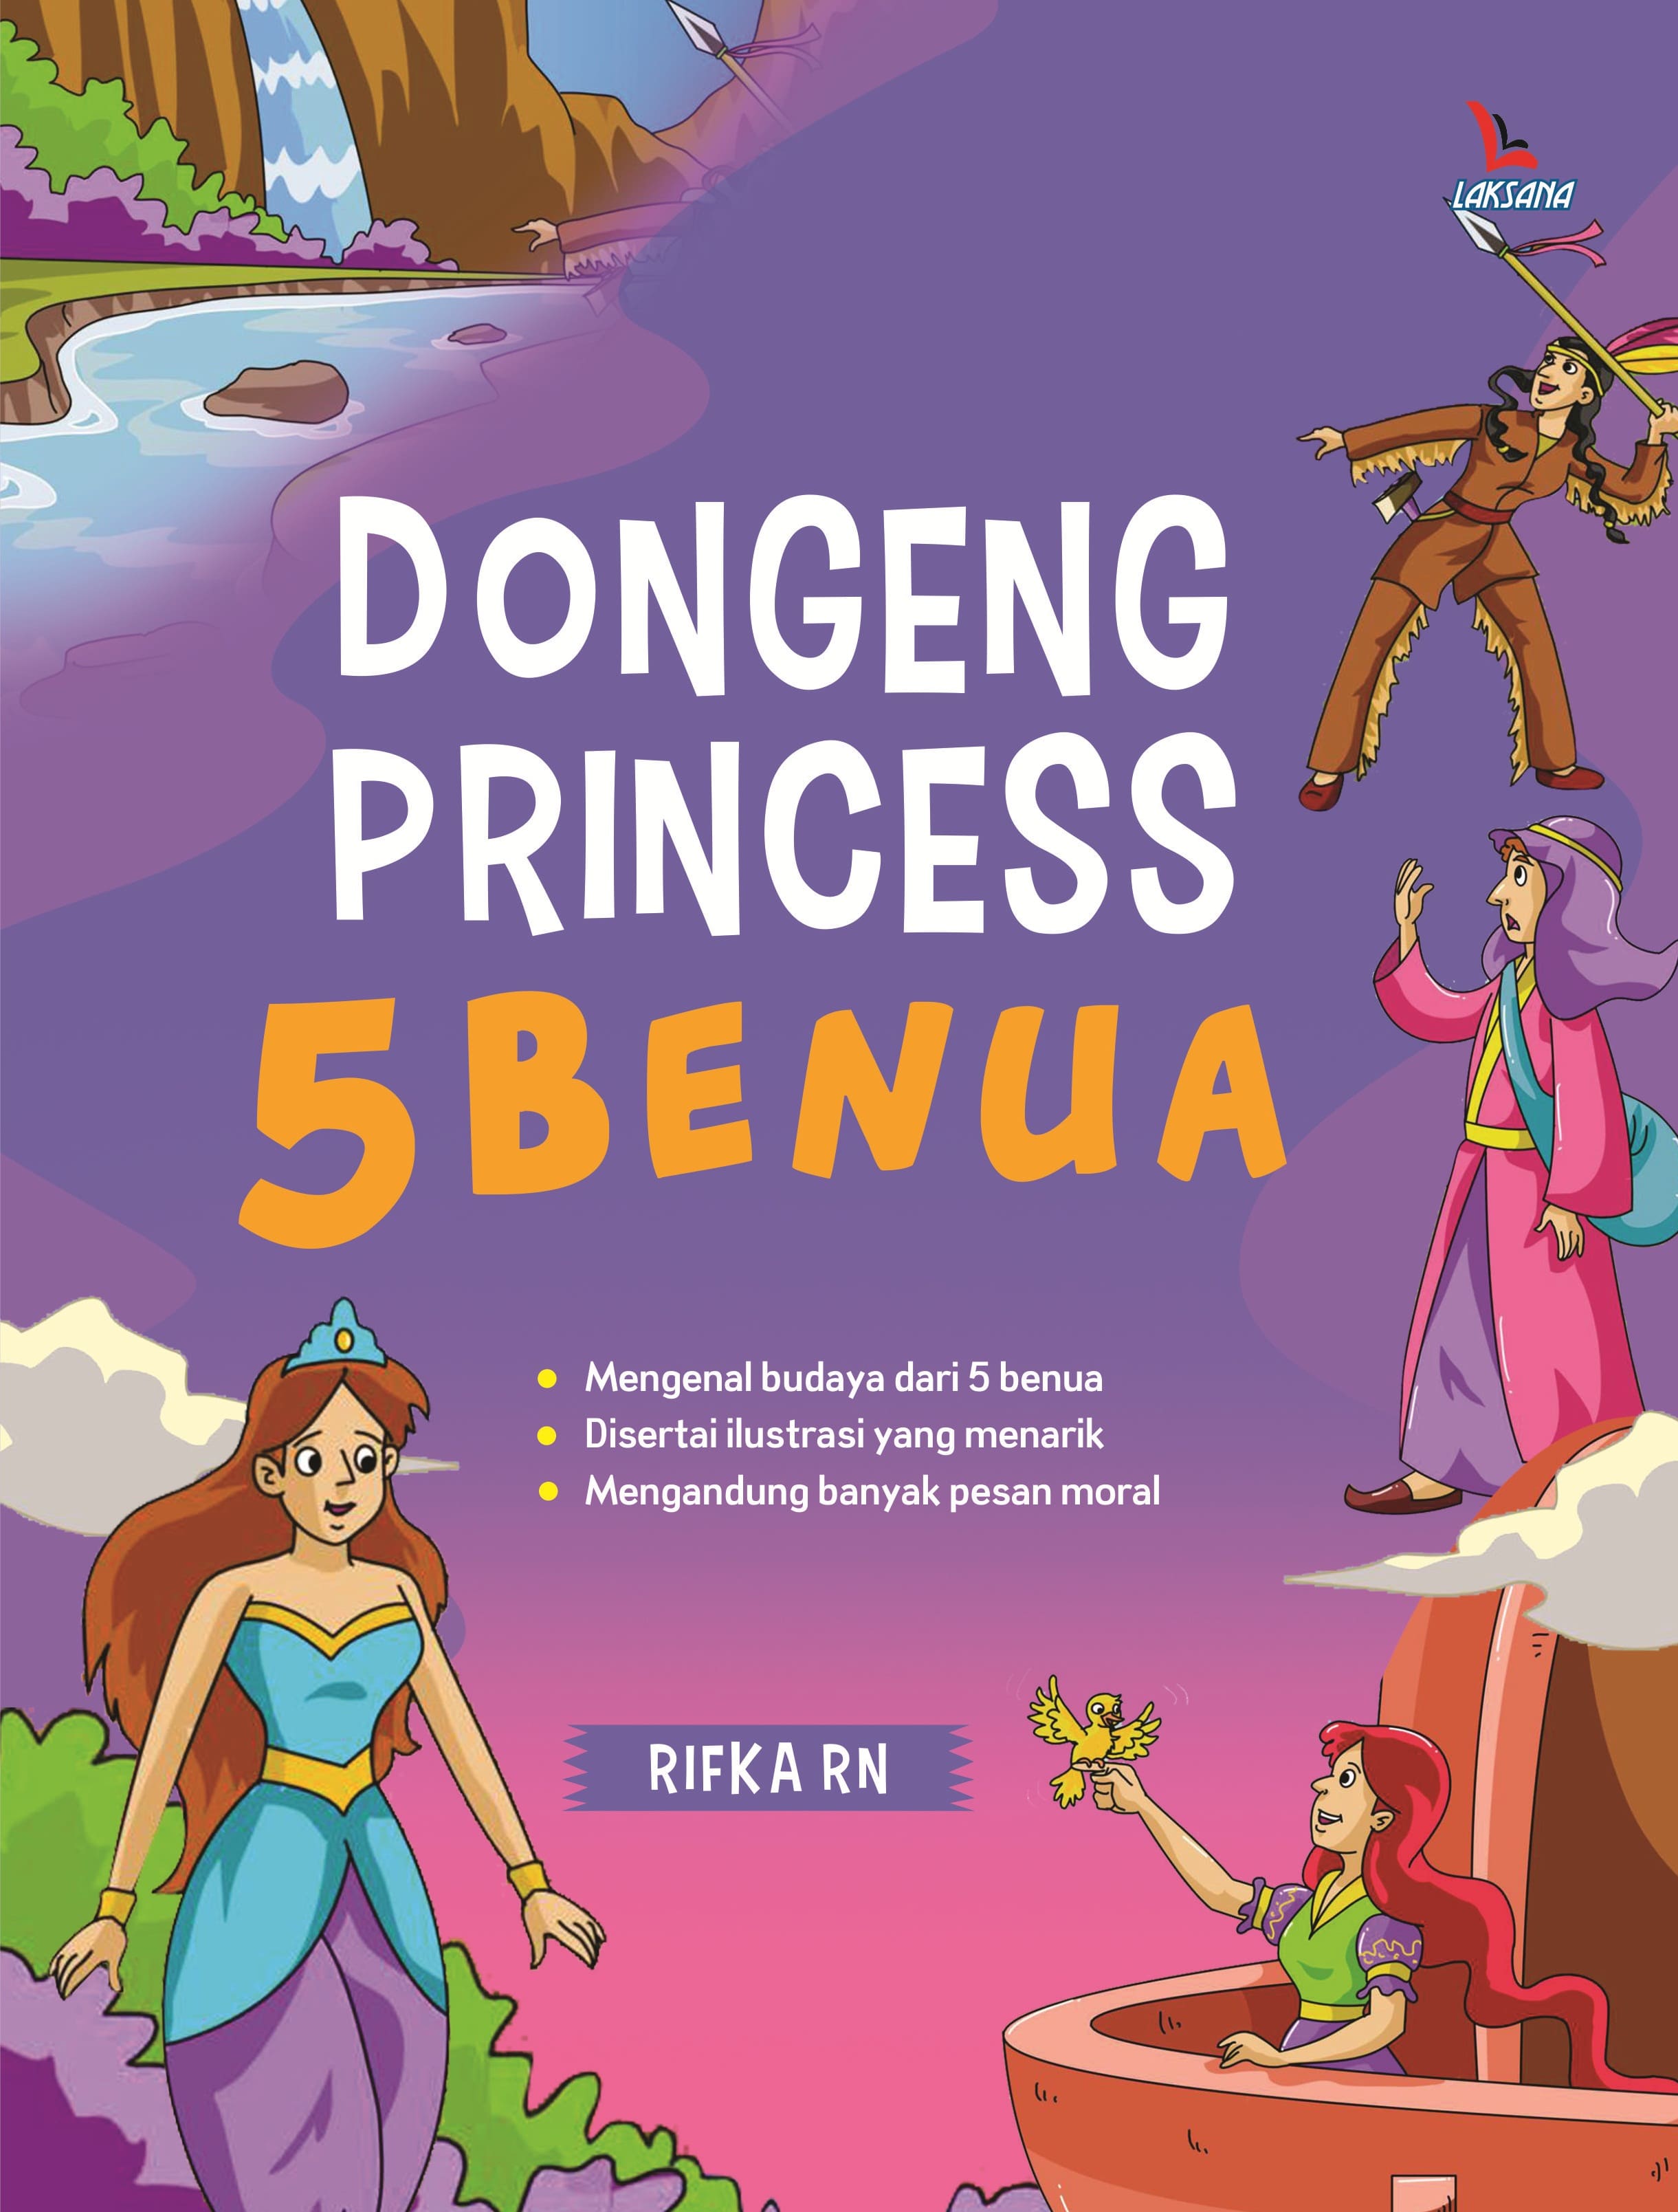 Dongeng Princess 5 Benua